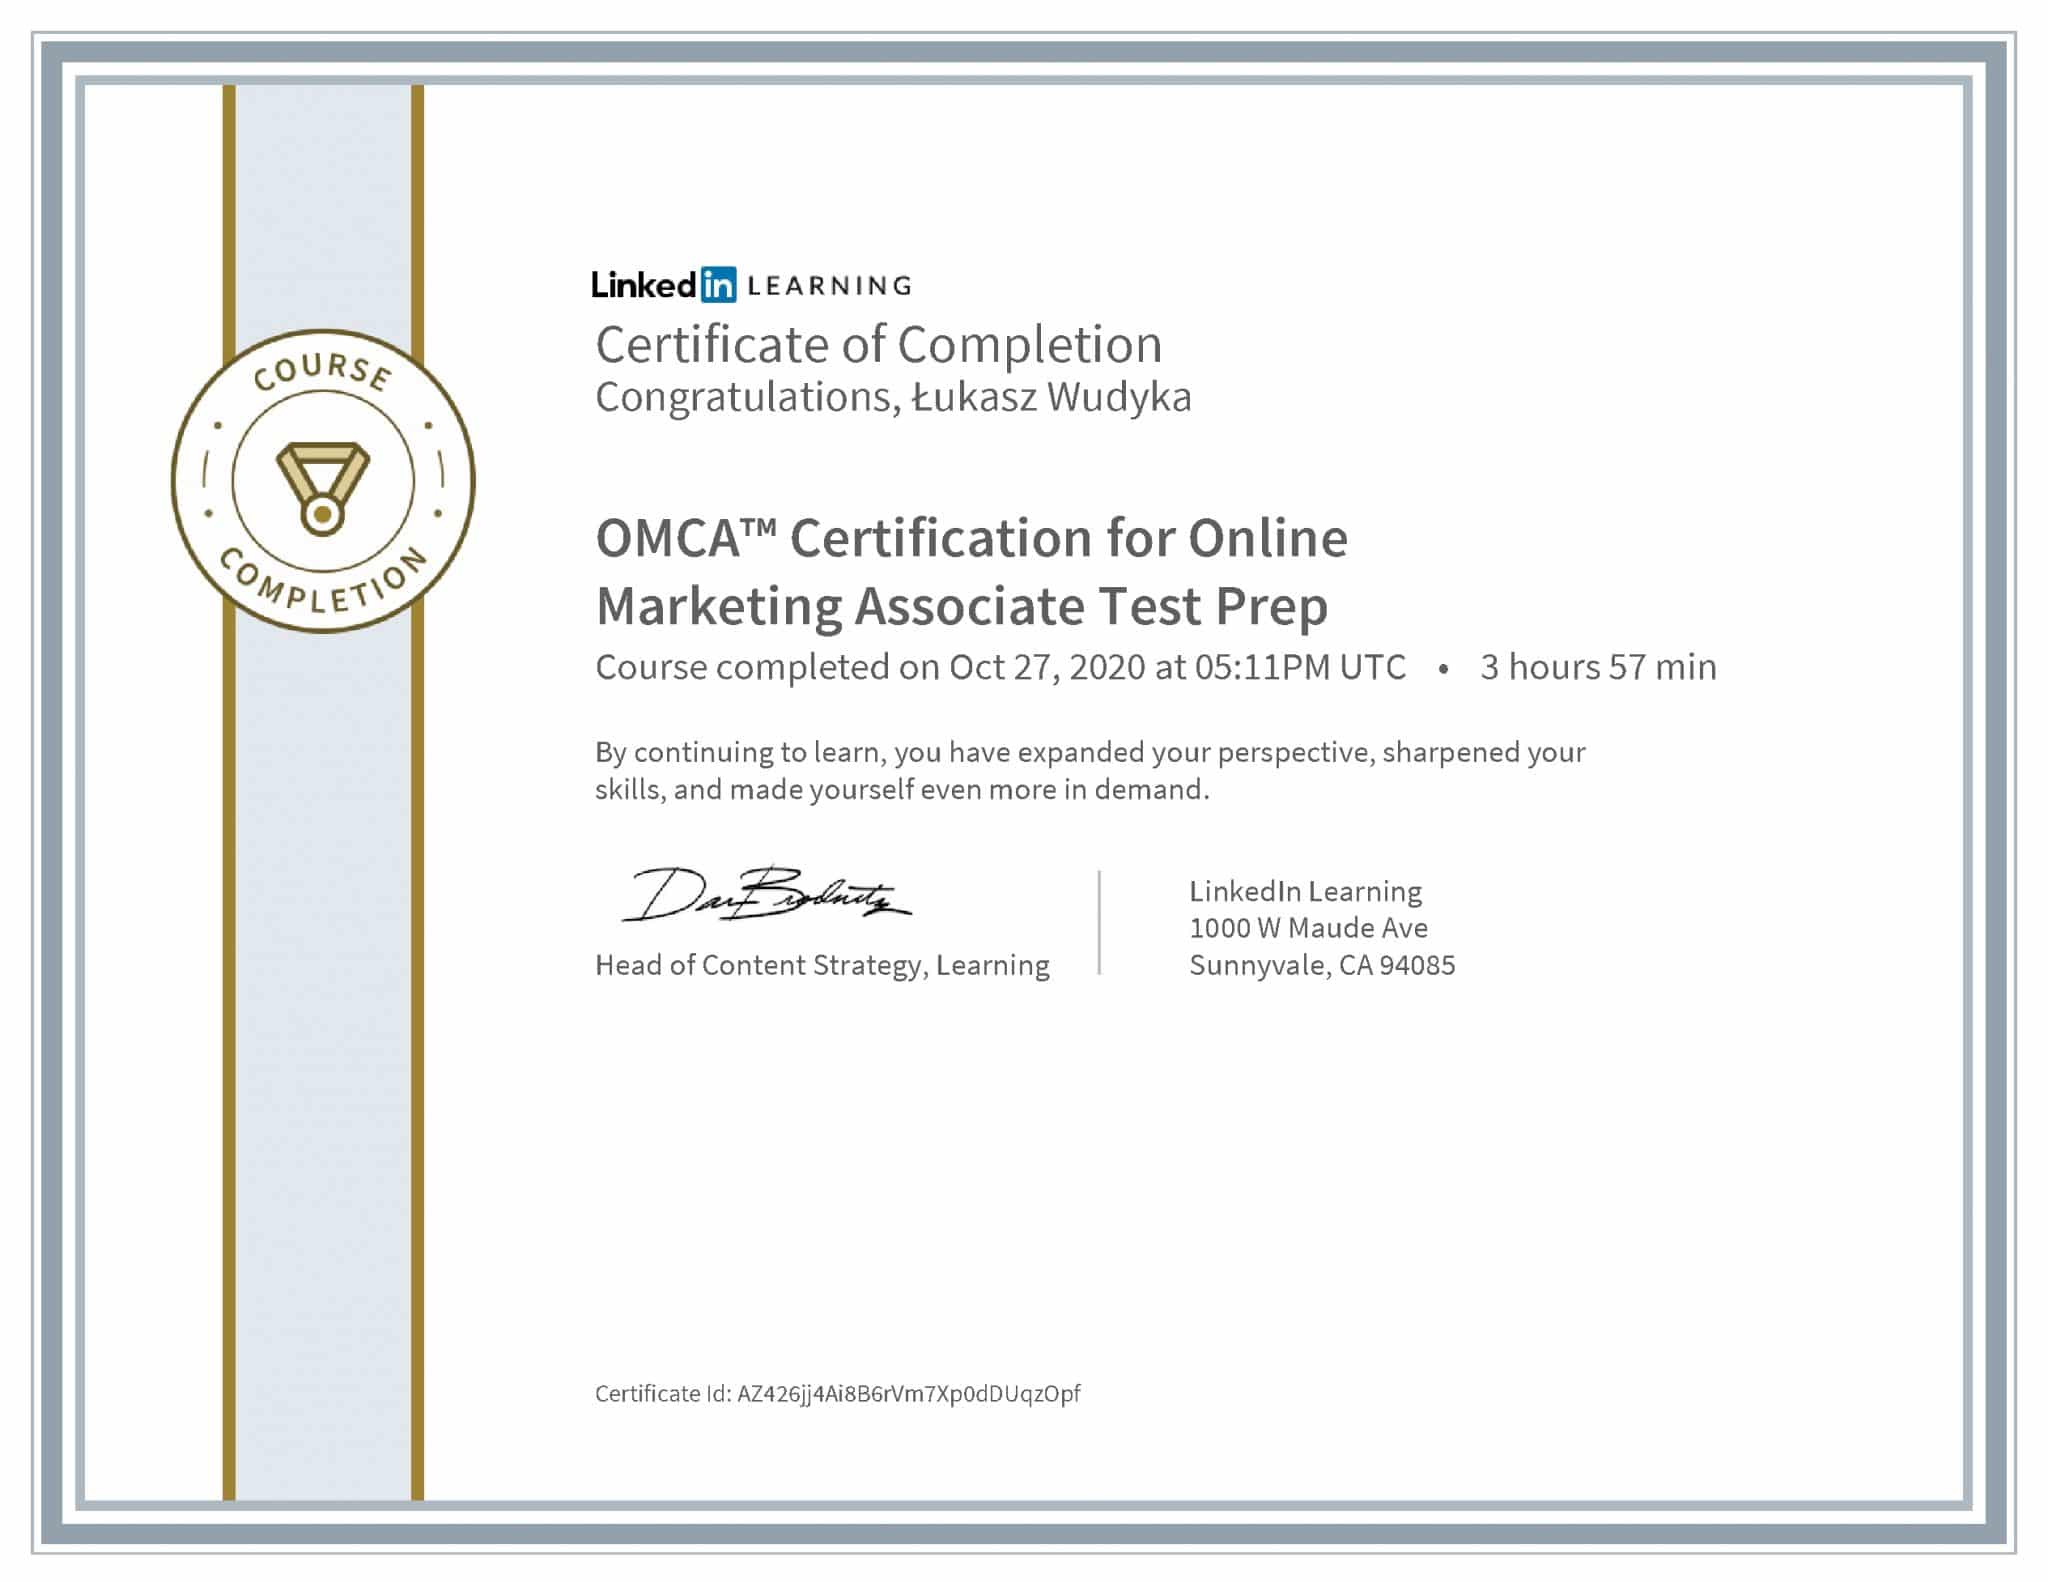 Łukasz Wudyka certyfikat LinkedIn OMCA™ Certification for Online Marketing Associate Test Prep